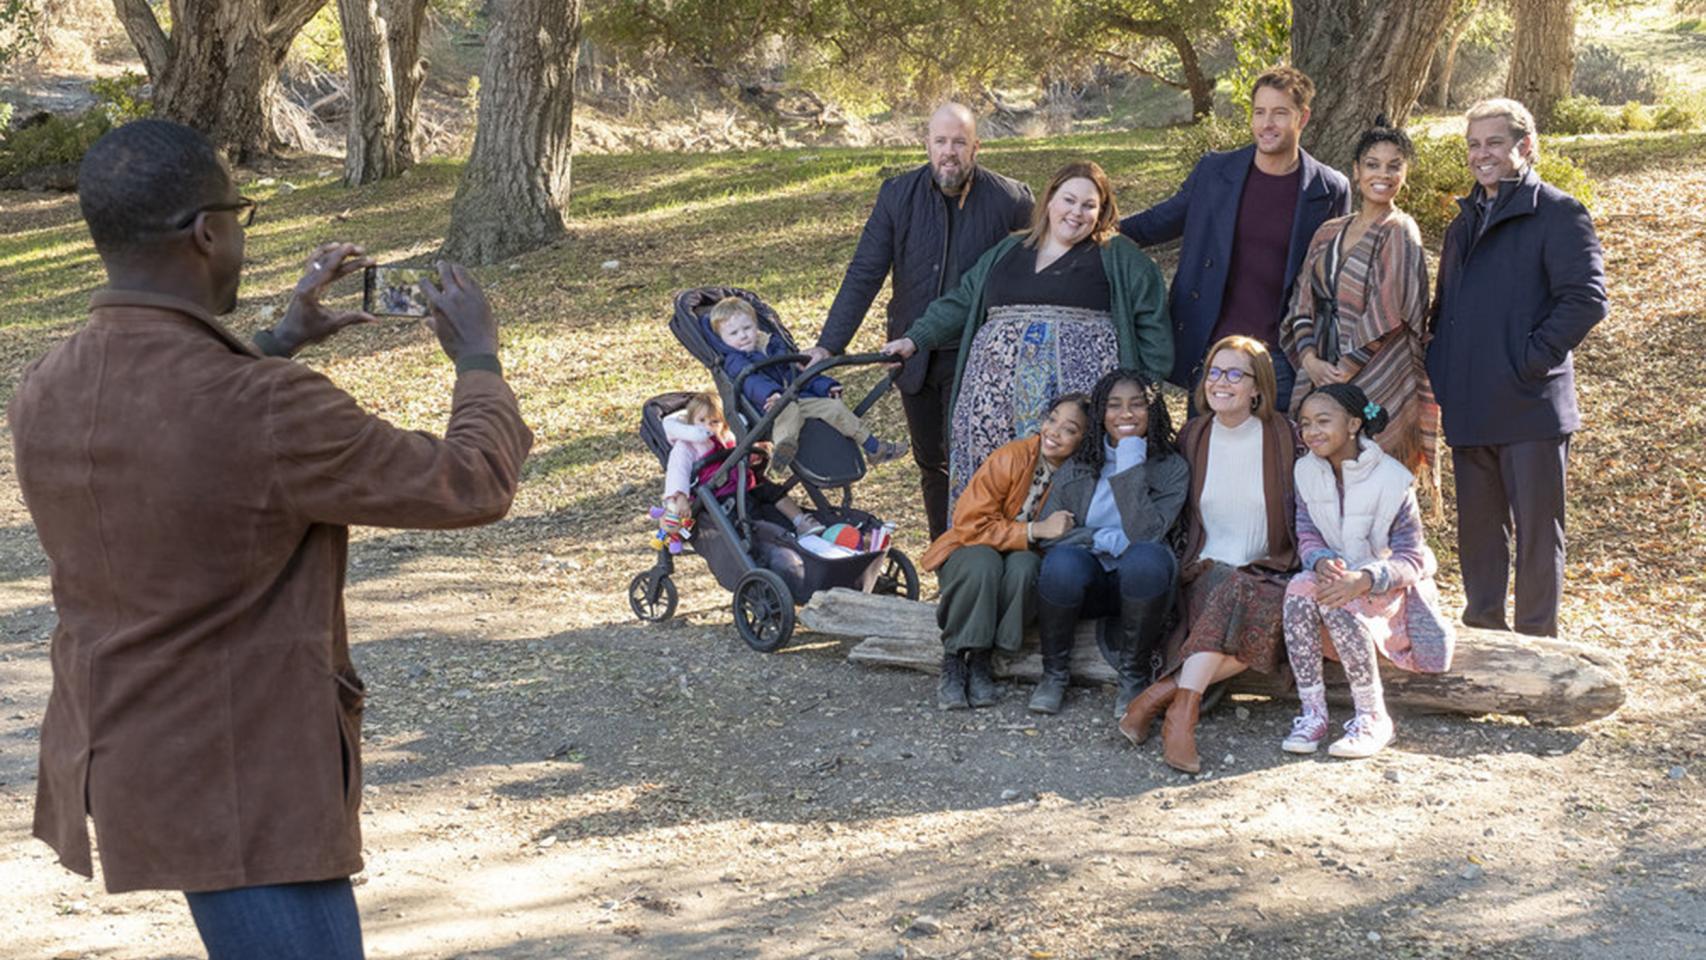 Nos preparamos para el último adiós de la familia Pearson en la temporada 6 de 'This is Us'